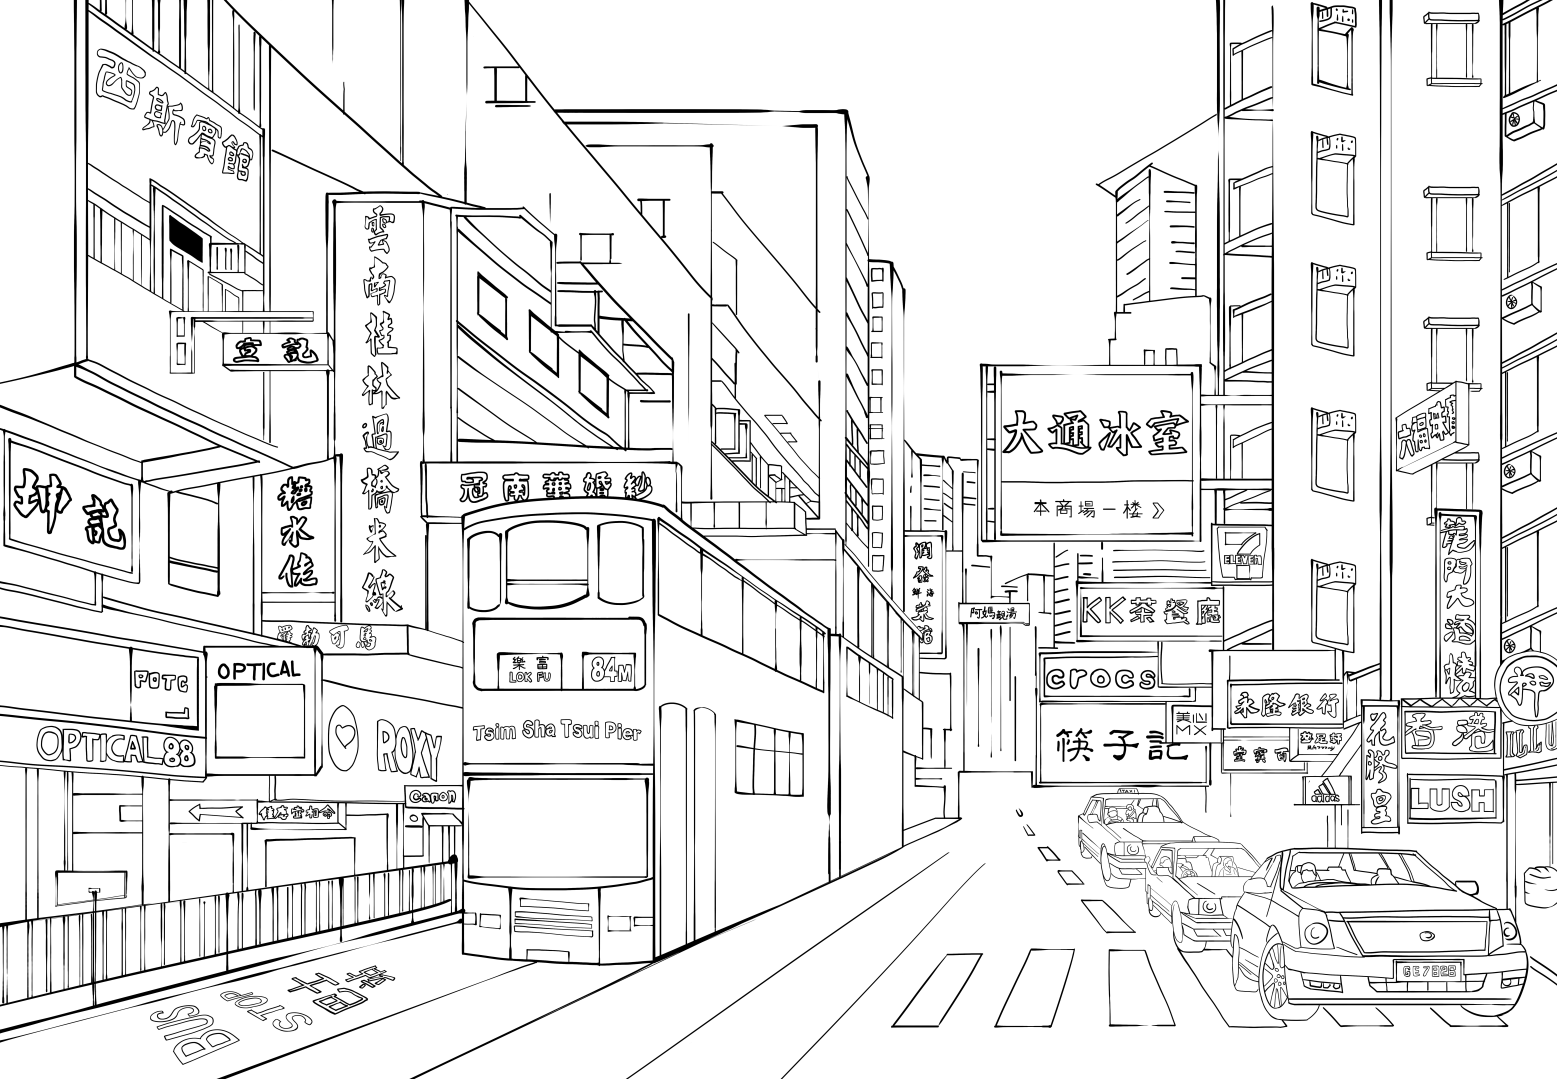 香港轮廓图手绘图片